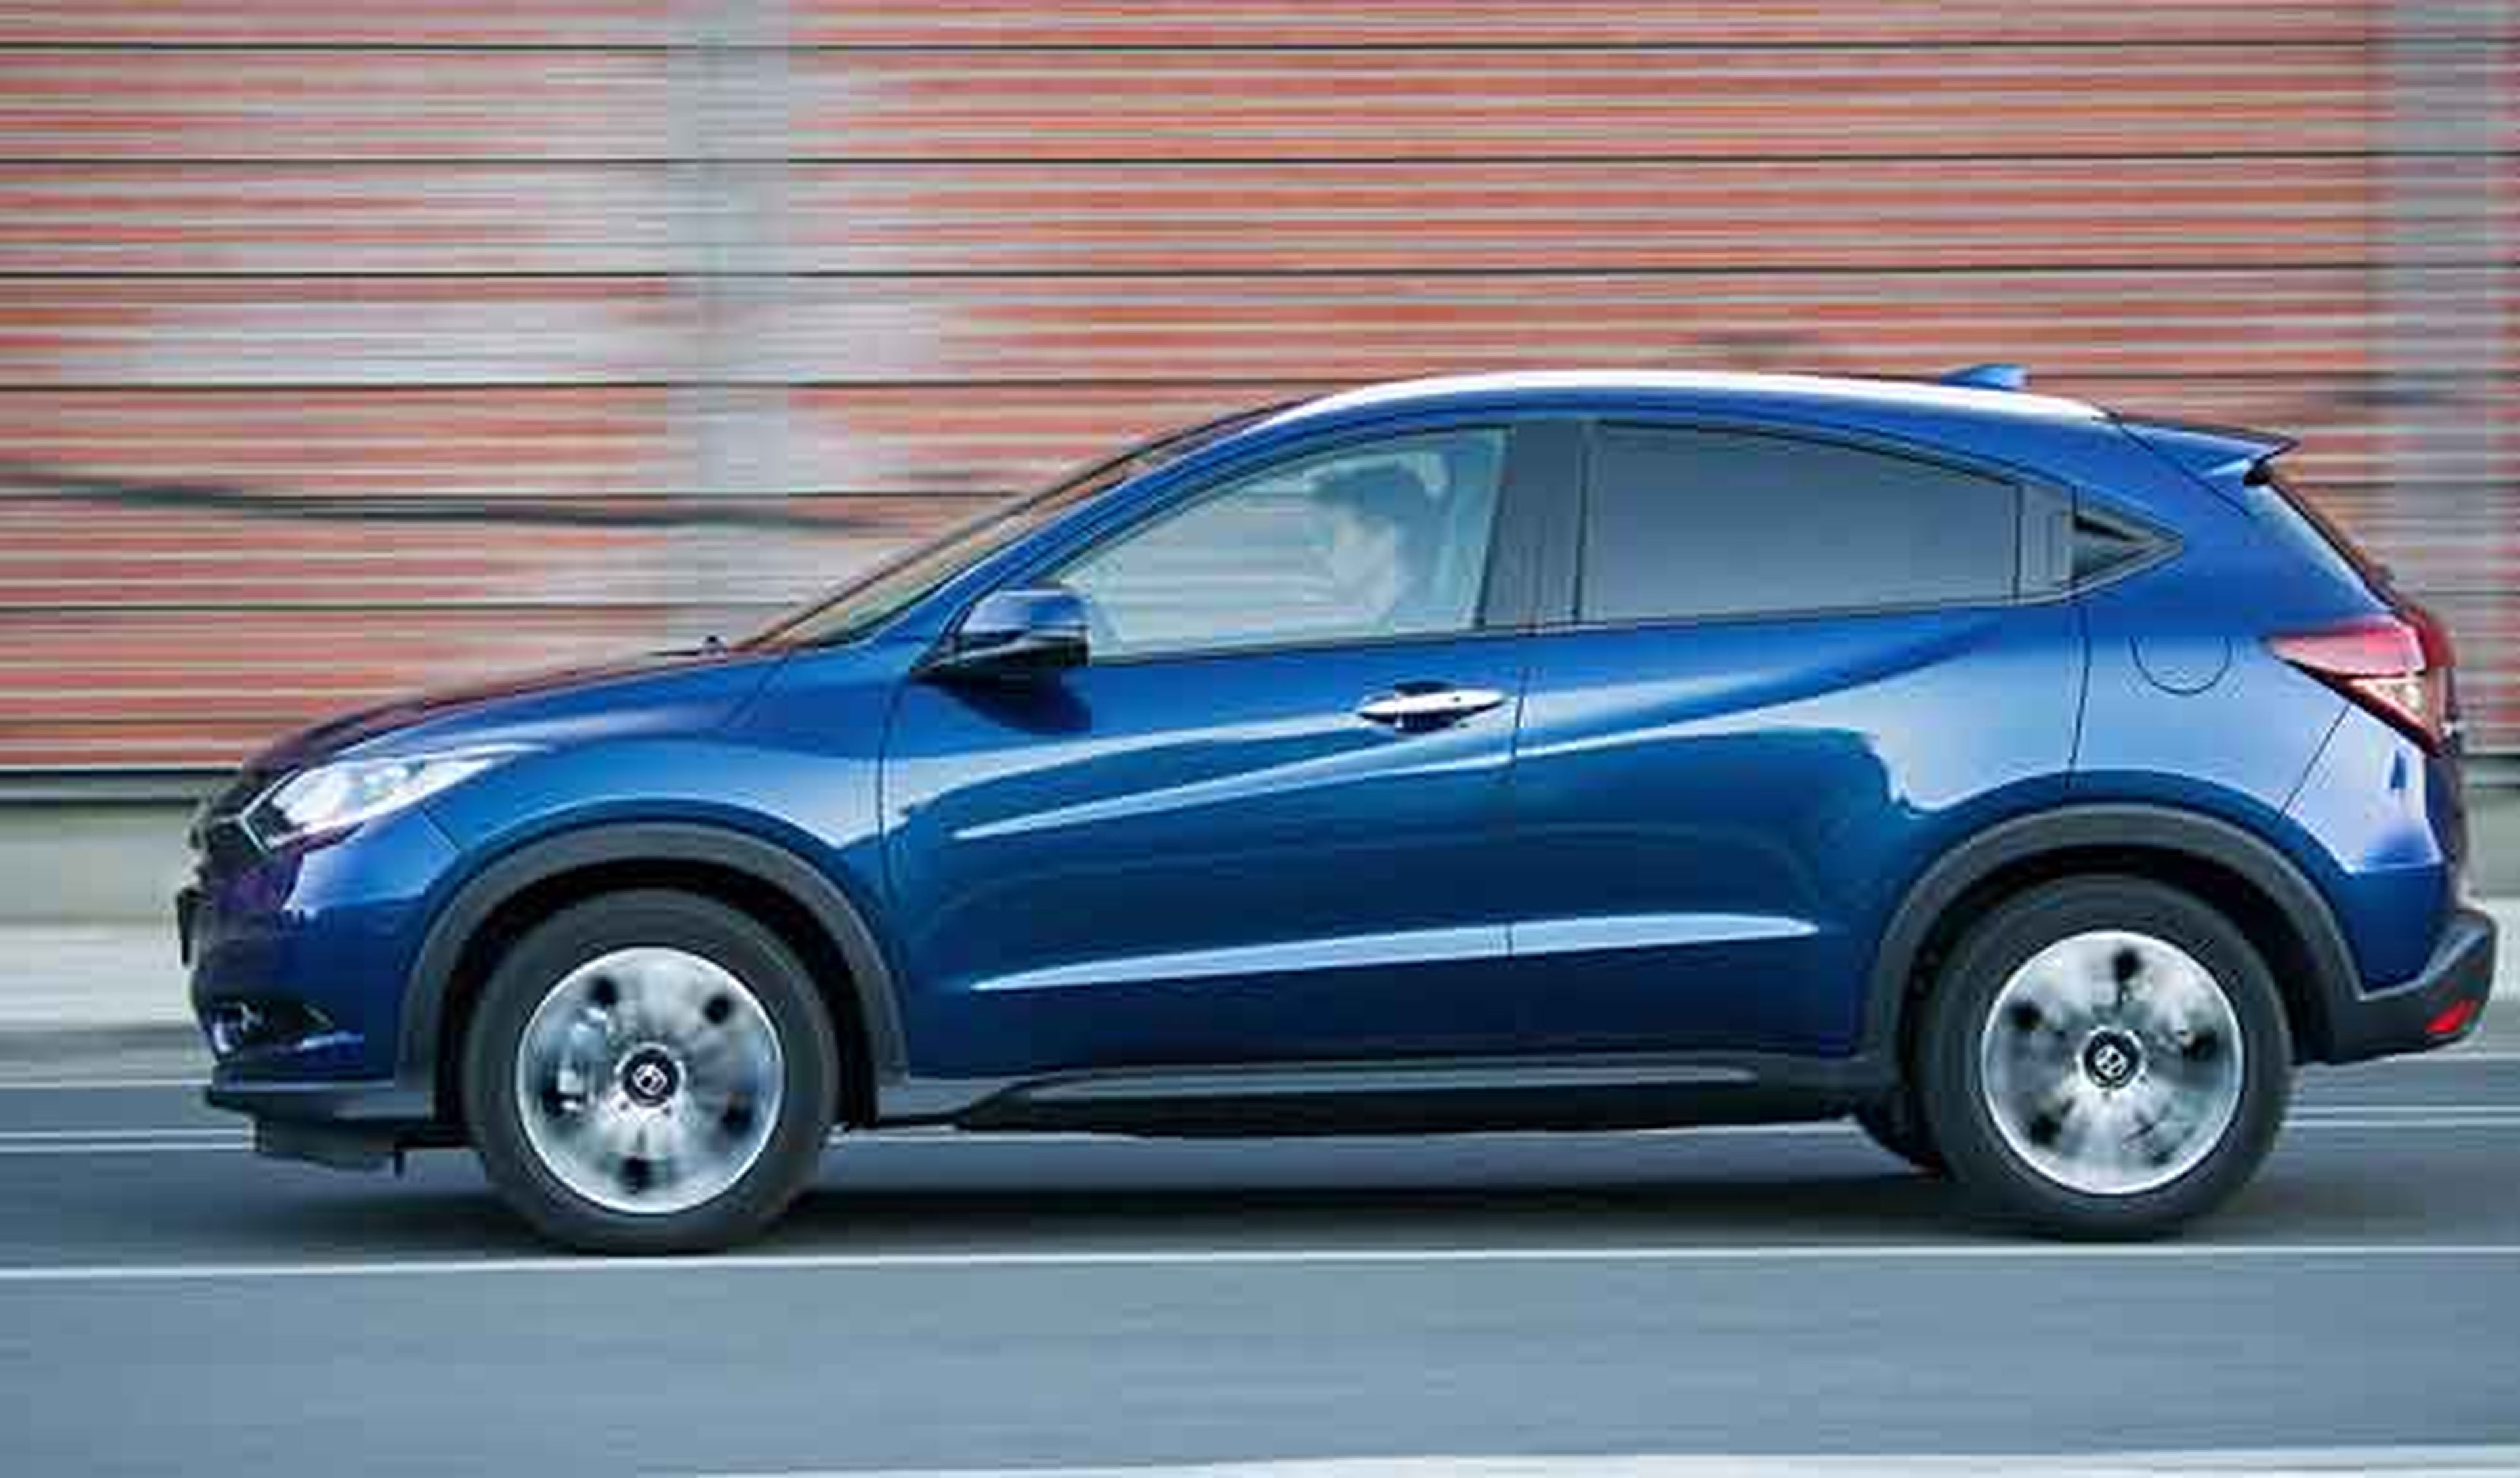 Honda podría estar preparando un SUV más grande con 7 plaza